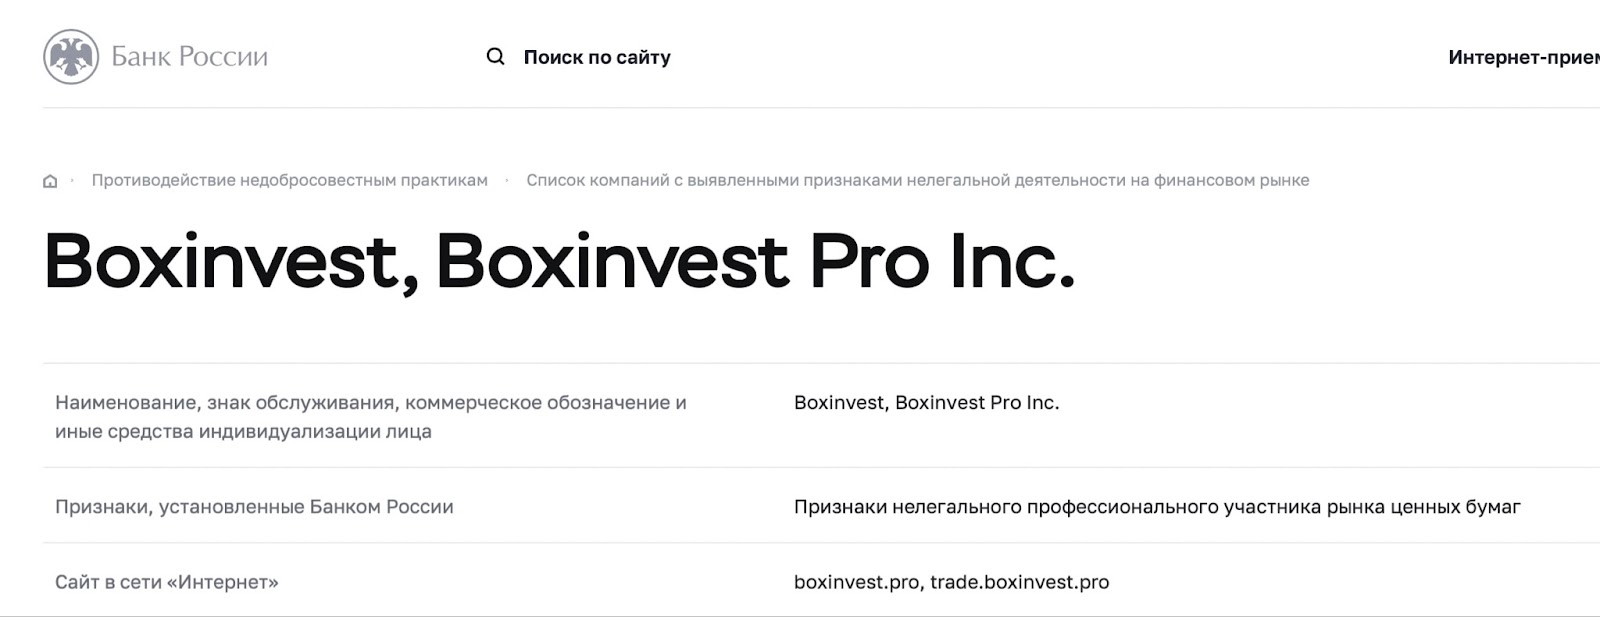 Boxinvest.pro: отзывы вкладчиков. Брокер с репутацией или мошенник?